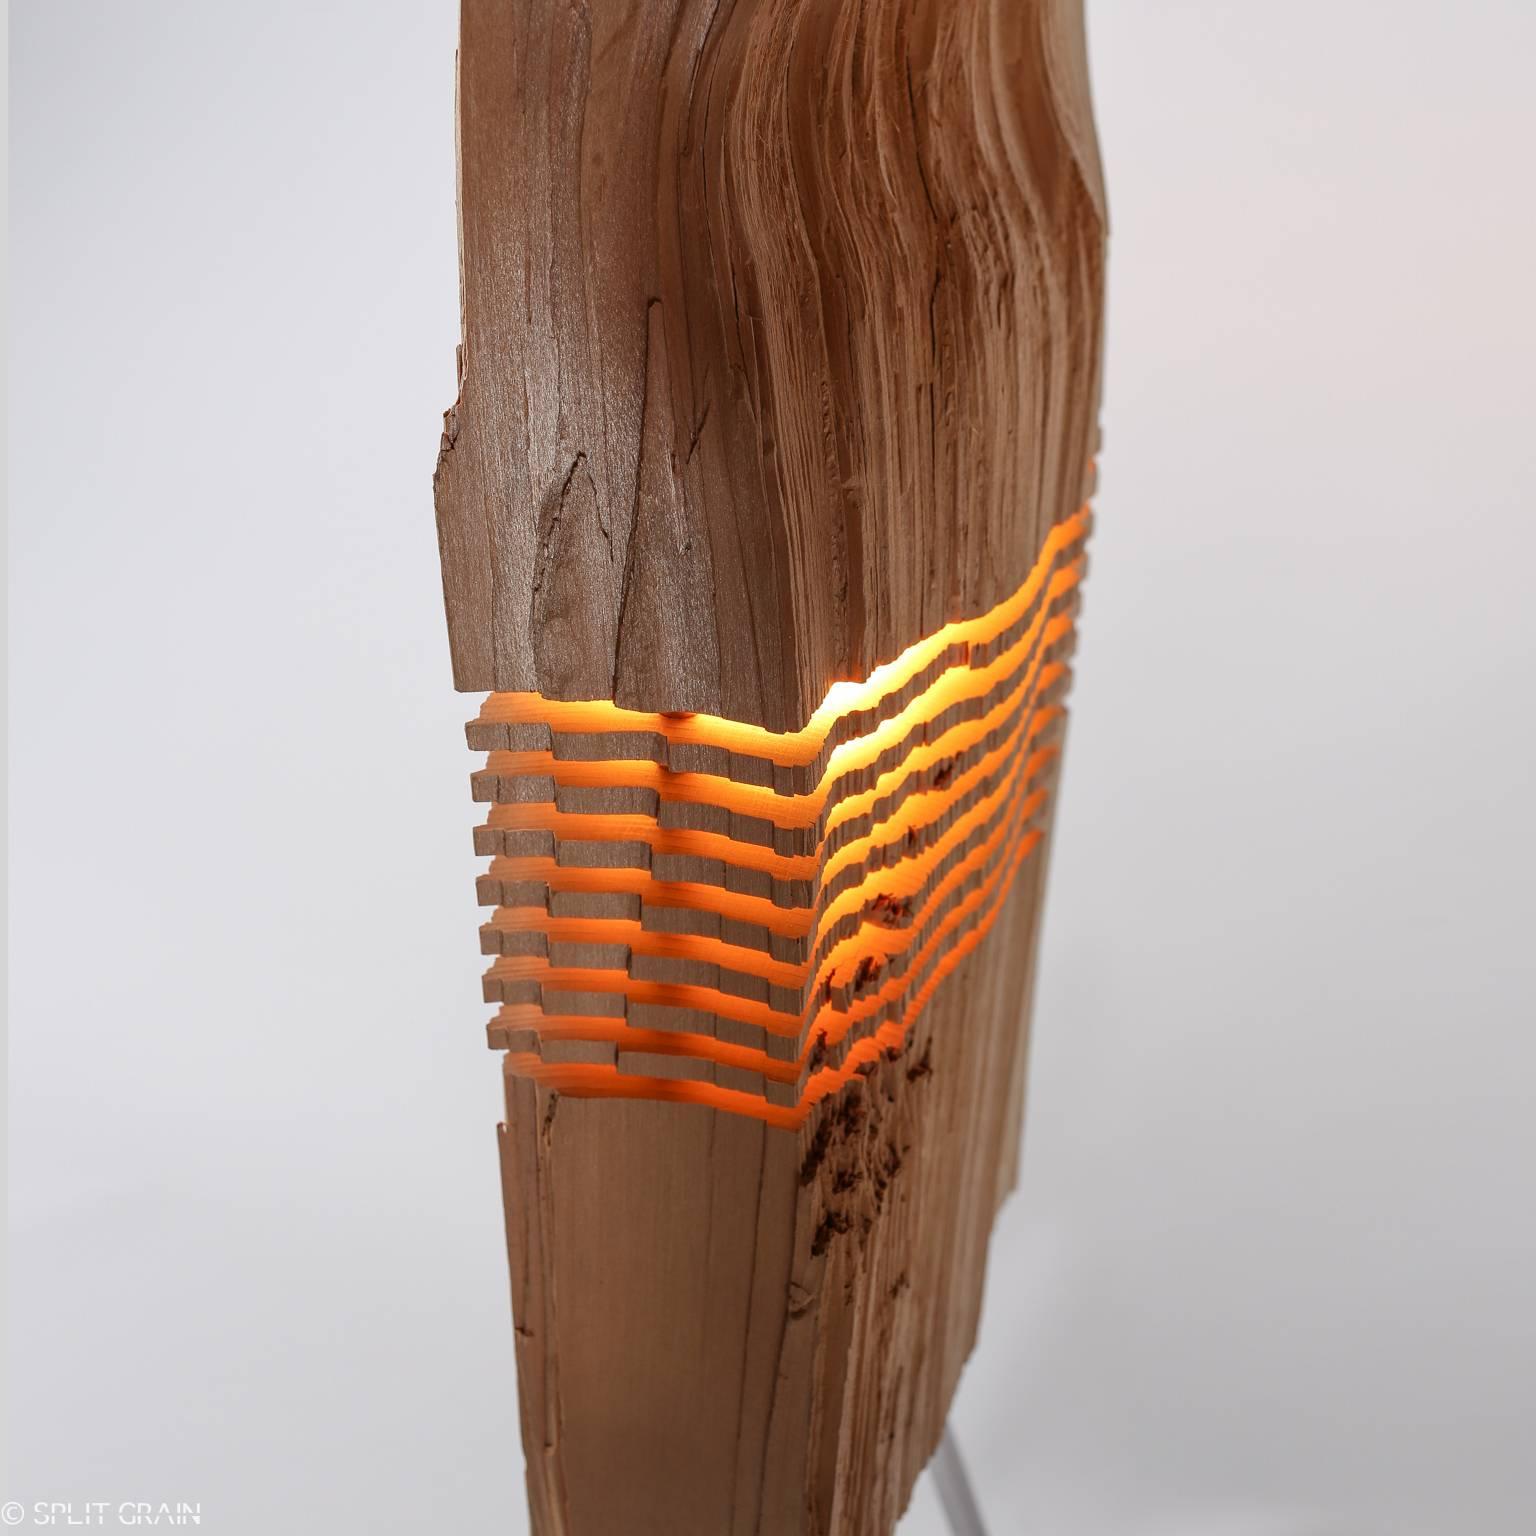 Die einzigartige Lichtskulptur mit gespaltener Maserung wurde von Paul Foeckler, einem Künstler des 20. Jahrhunderts, aus einer wiedergewonnenen kalifornischen Weihrauchzeder mit einem ausgehöhlten Kern gefertigt, der mit einer eingebauten dimmbaren